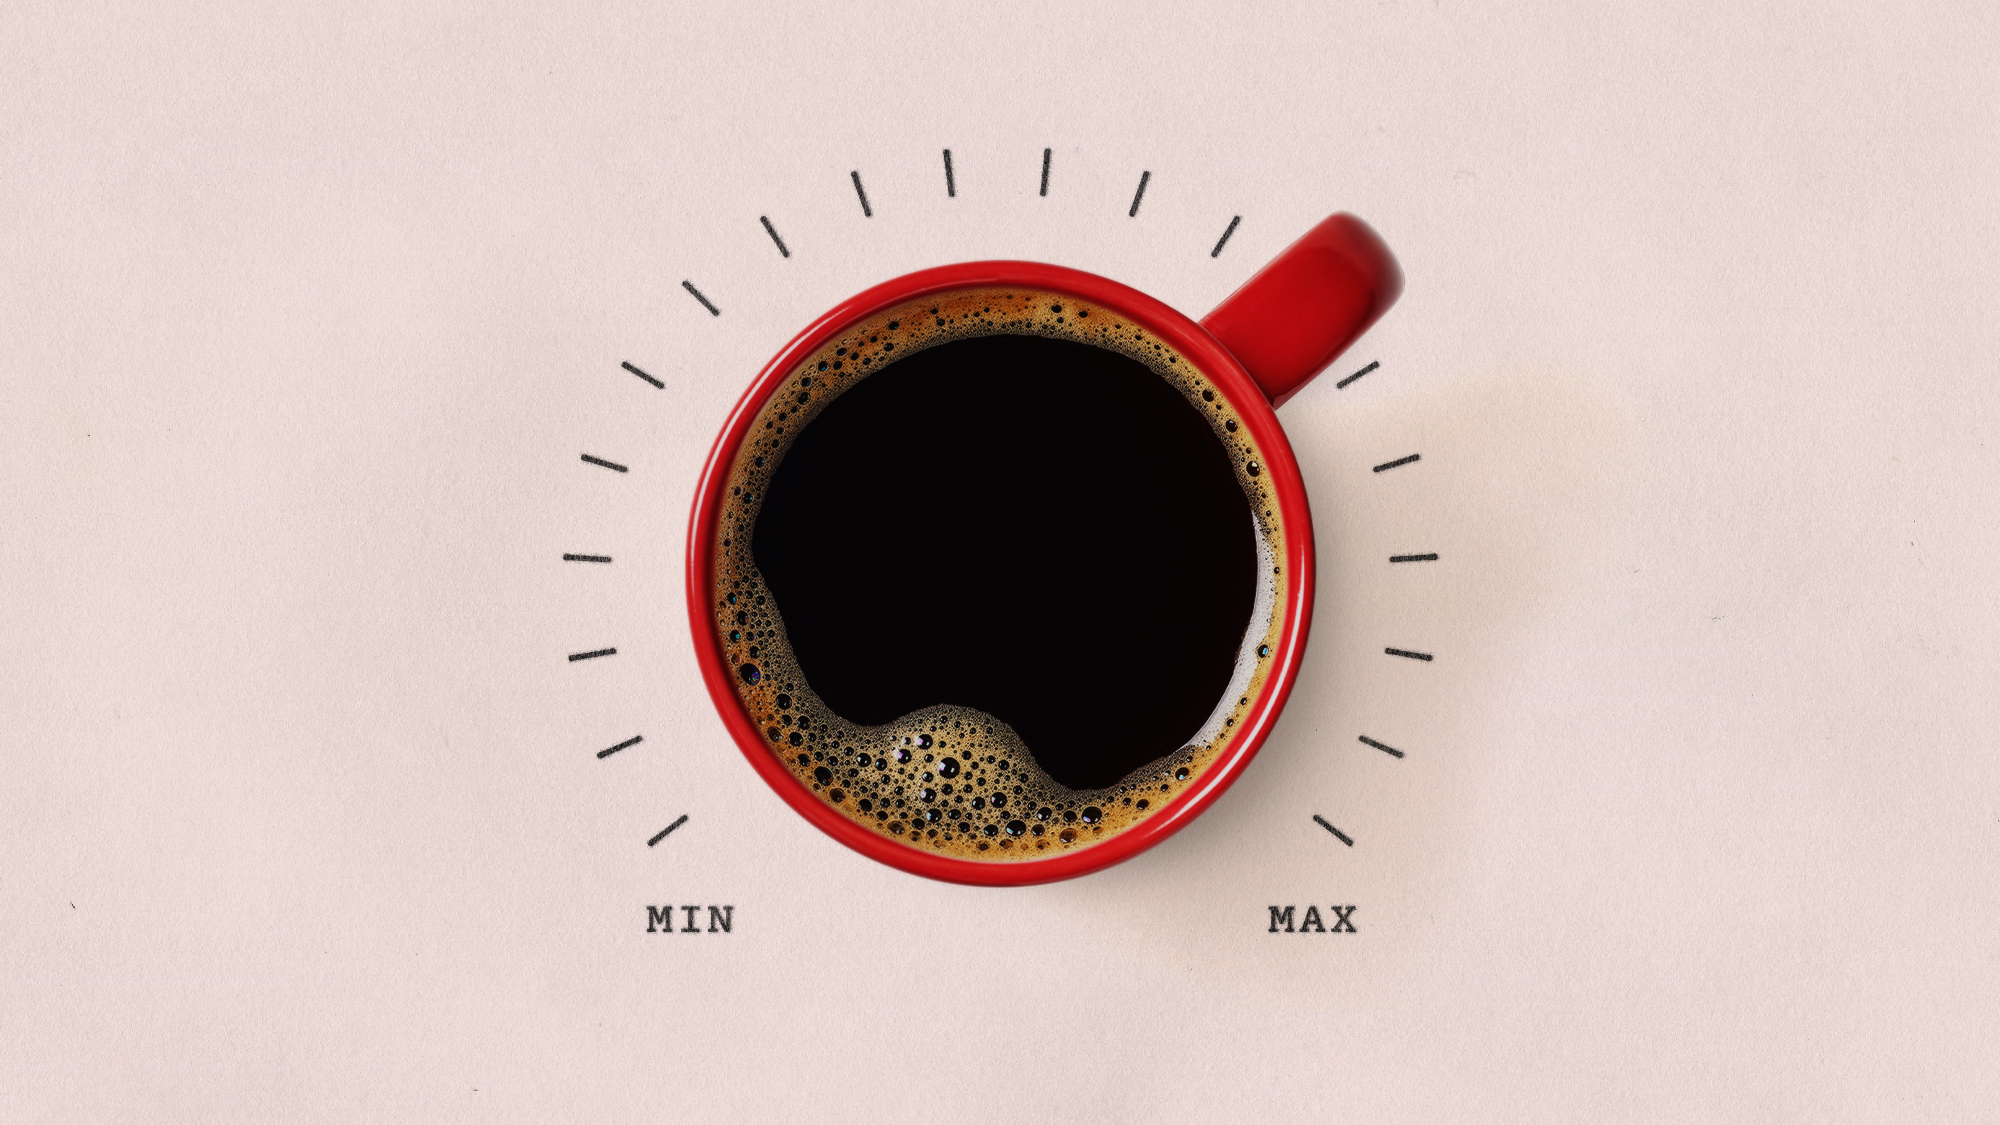 Eine Tasse Kaffee, umgeben von einer Min-Max-Skala